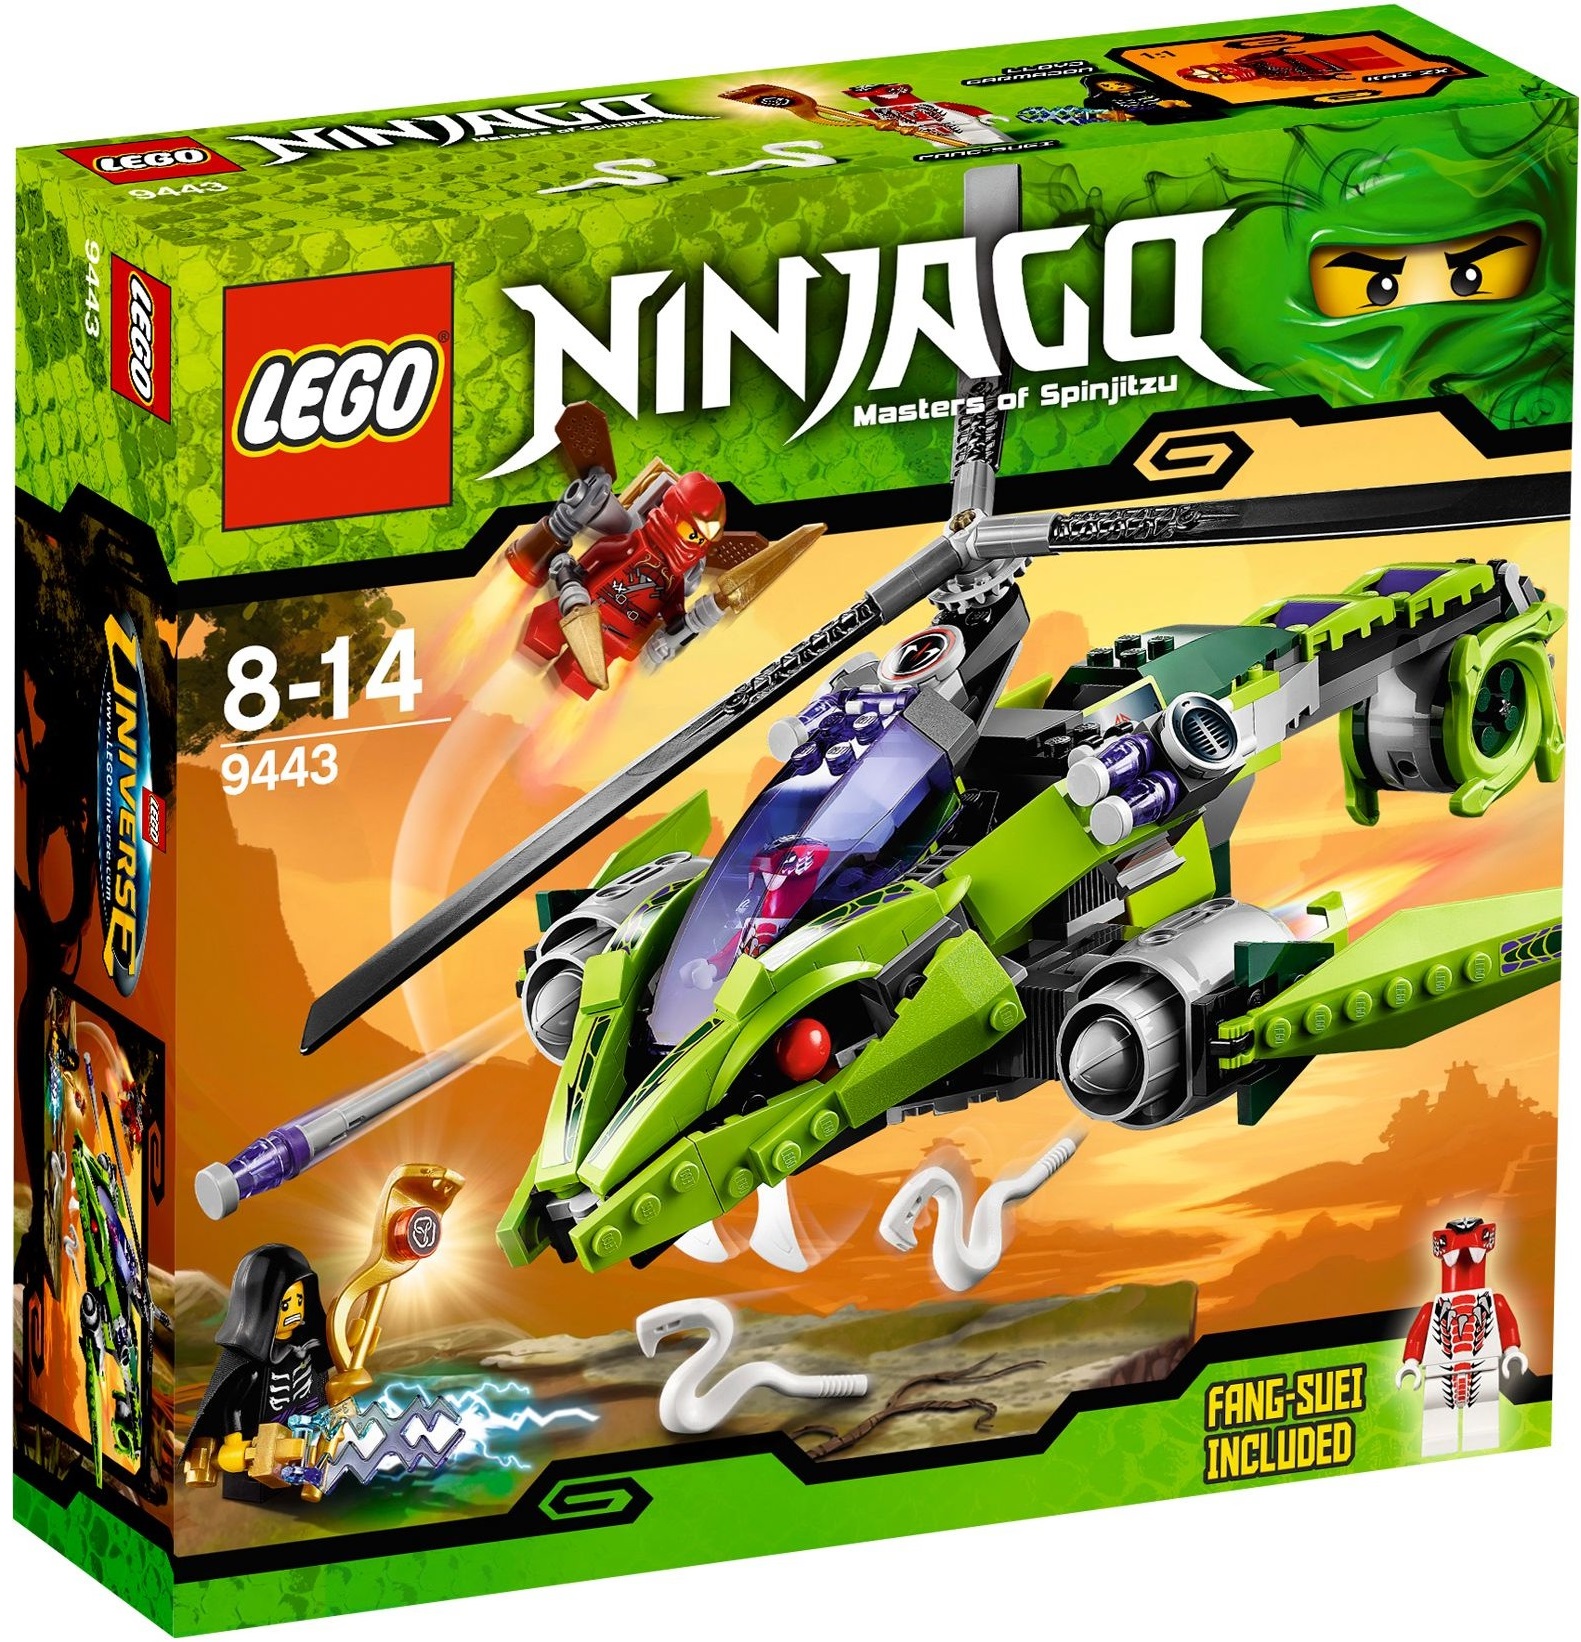 Лего Ниндзя Го 9443 Змеиный вертолет